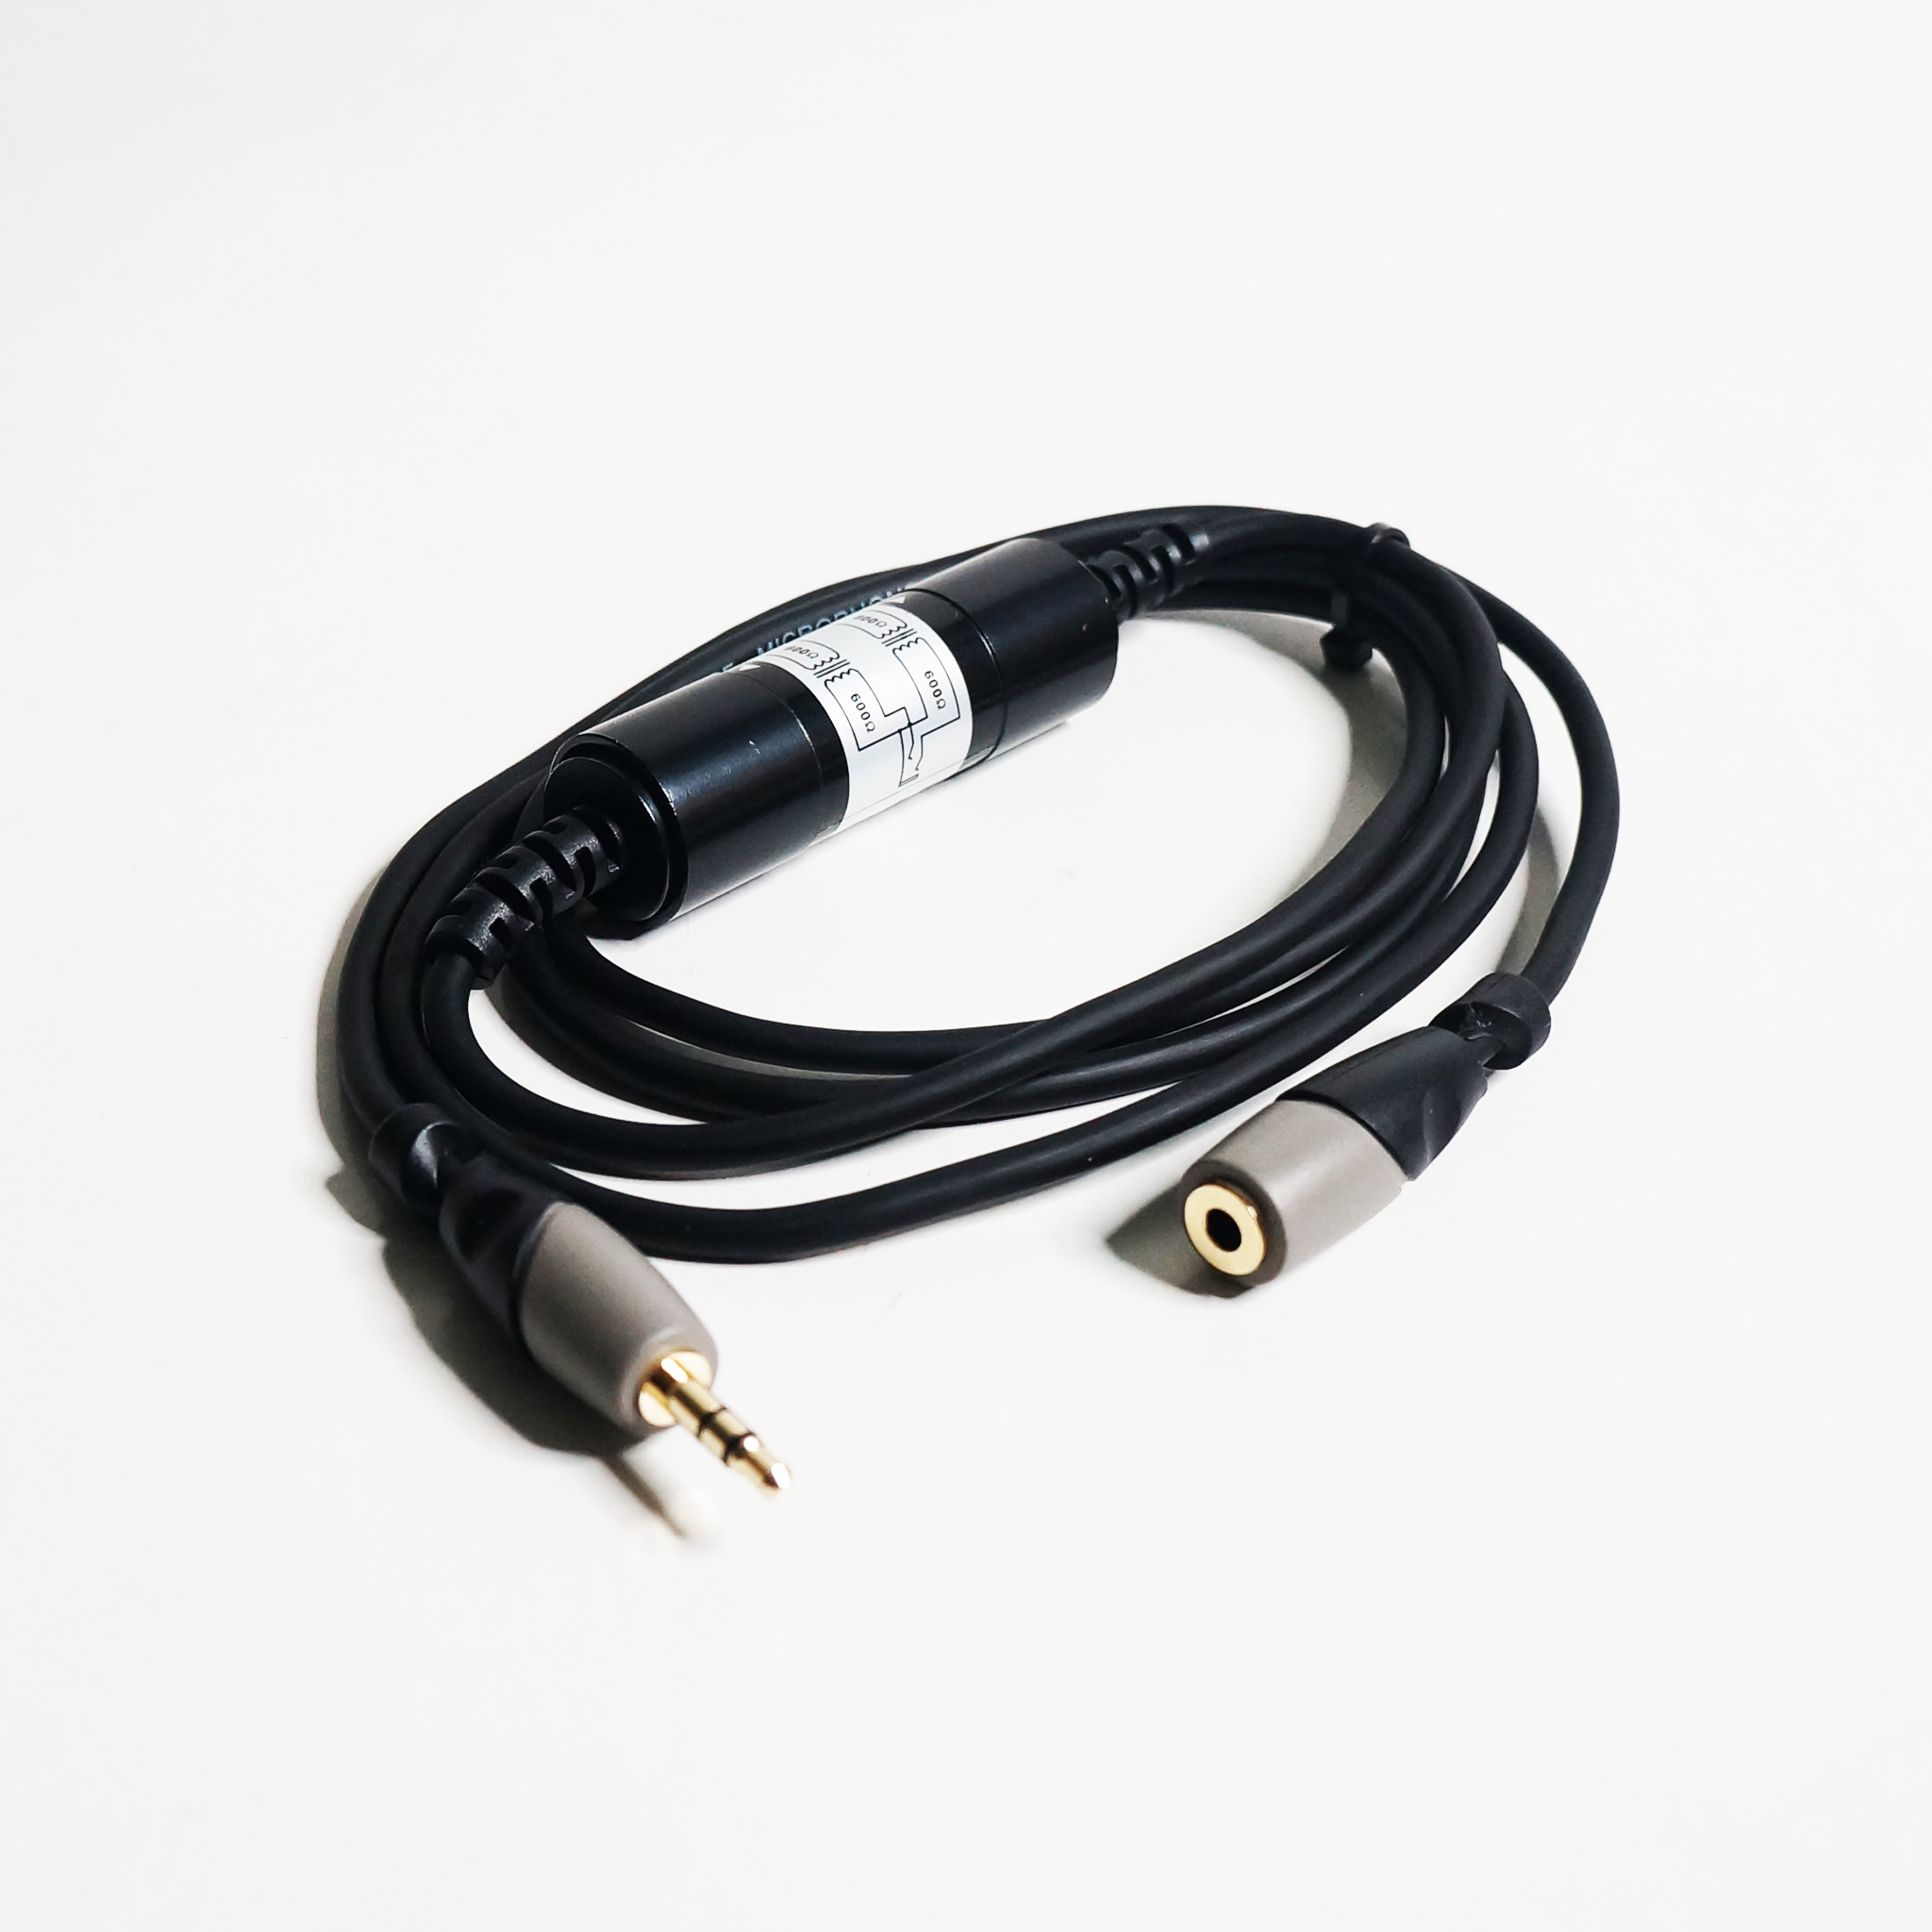 Soundking BJJ304-1 3.5mm to RCA Audio Noise Eliminator